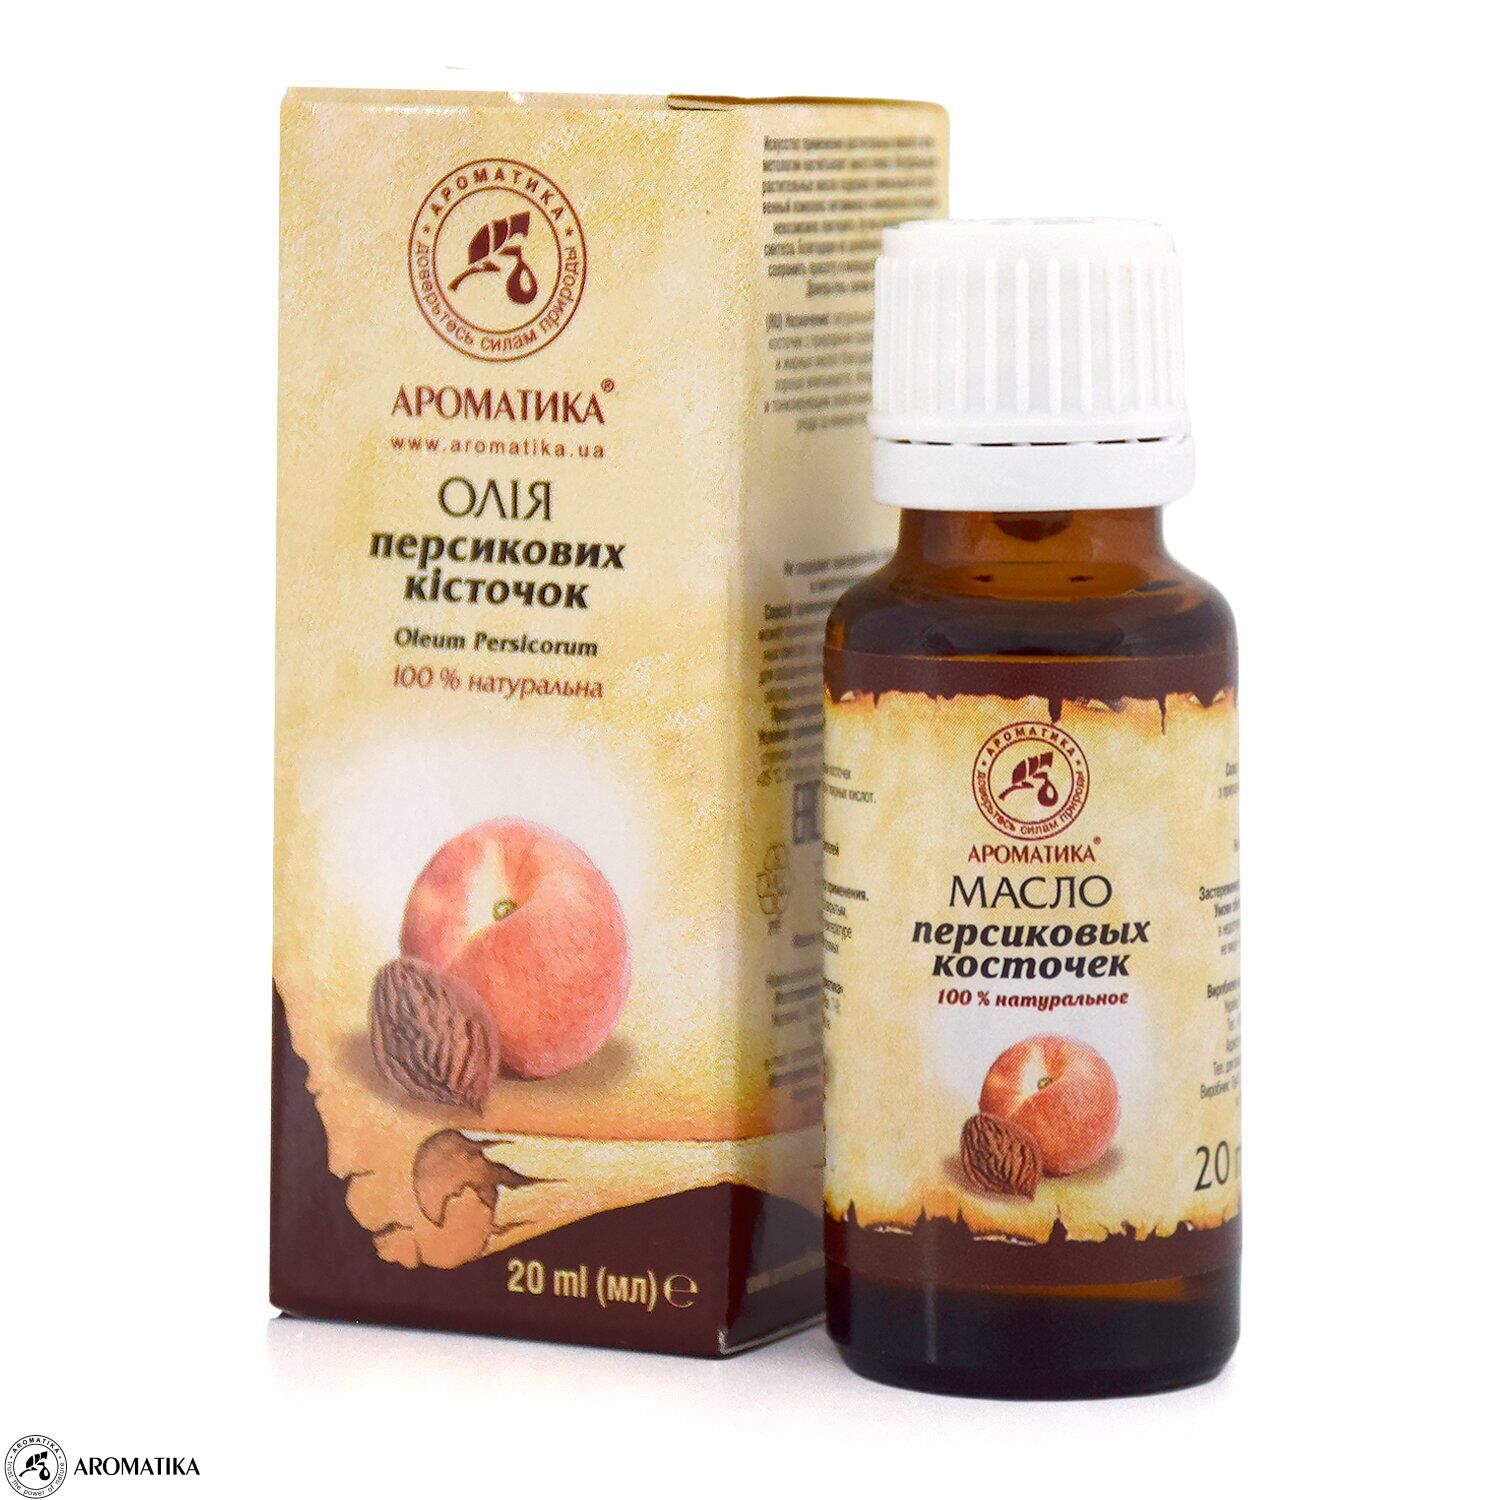 Косметическое персиковое масло можно ли